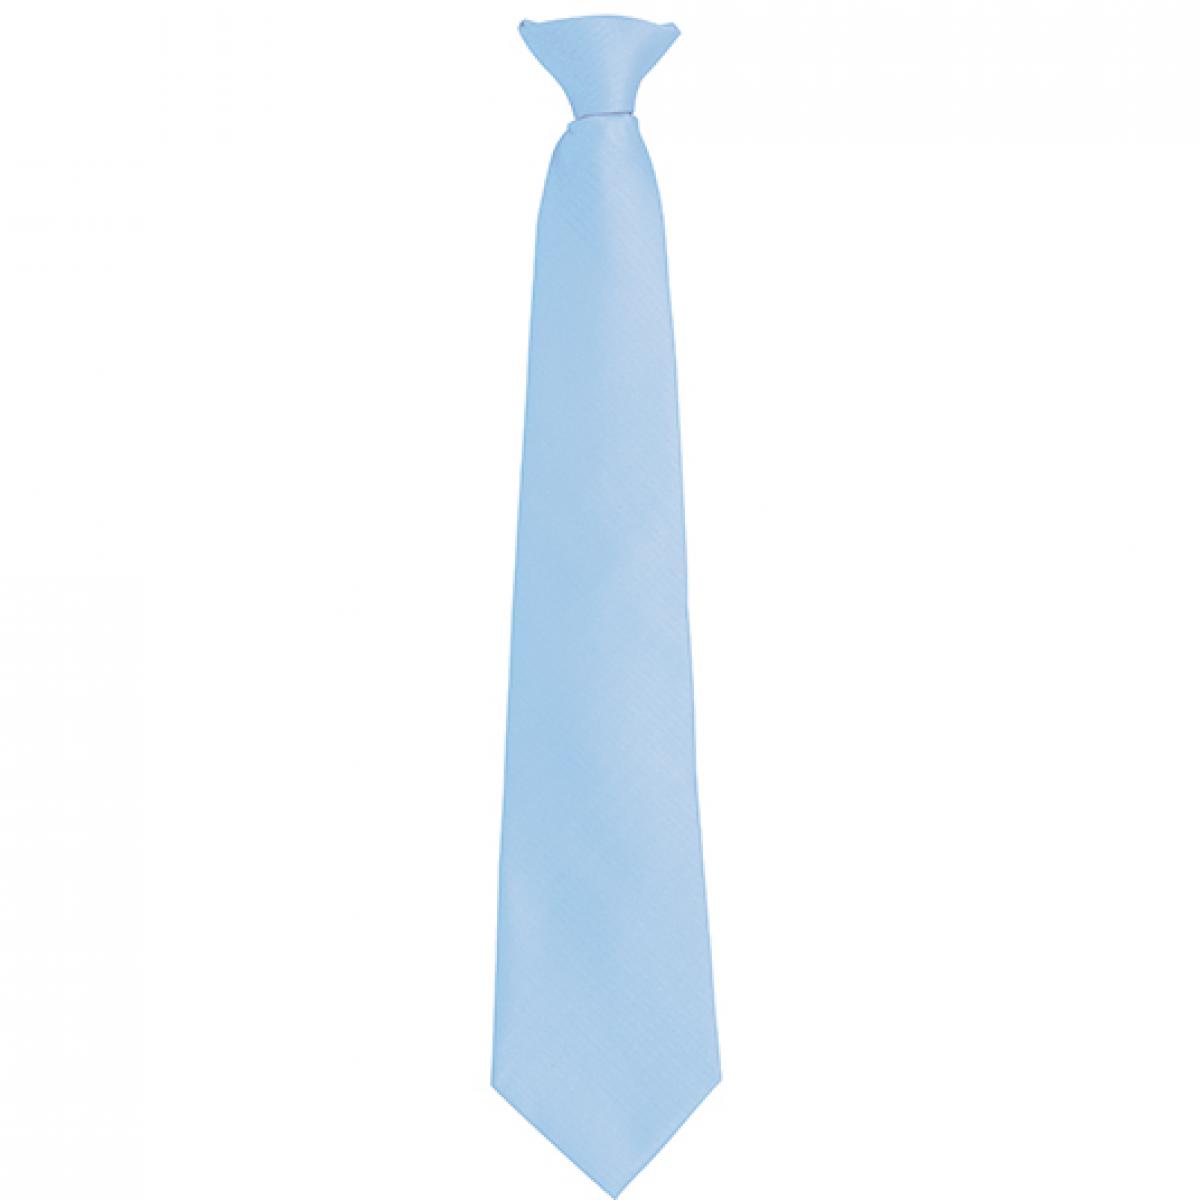 Hersteller: Premier Workwear Herstellernummer: PR785 Artikelbezeichnung: ´Colours´ Fashion Clip Tie Farbe: Midblue (ca. Pantone 657C)